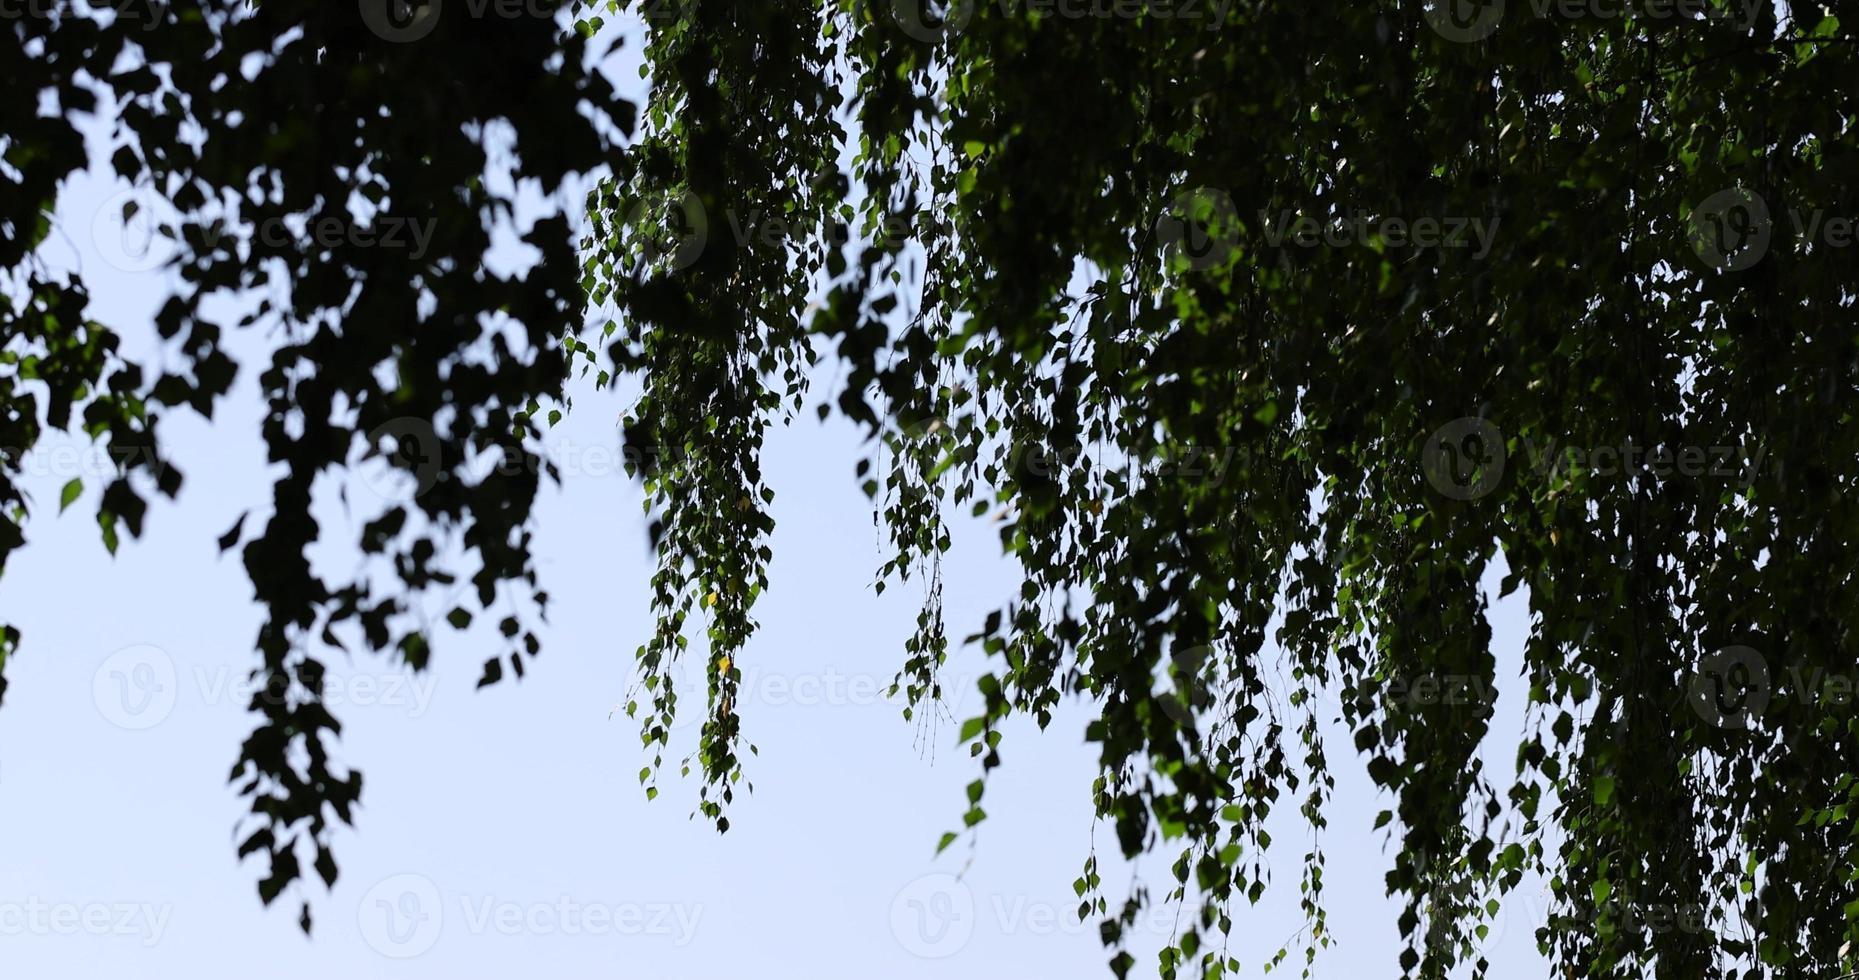 grön björk lövverk i solig blåsigt väder foto